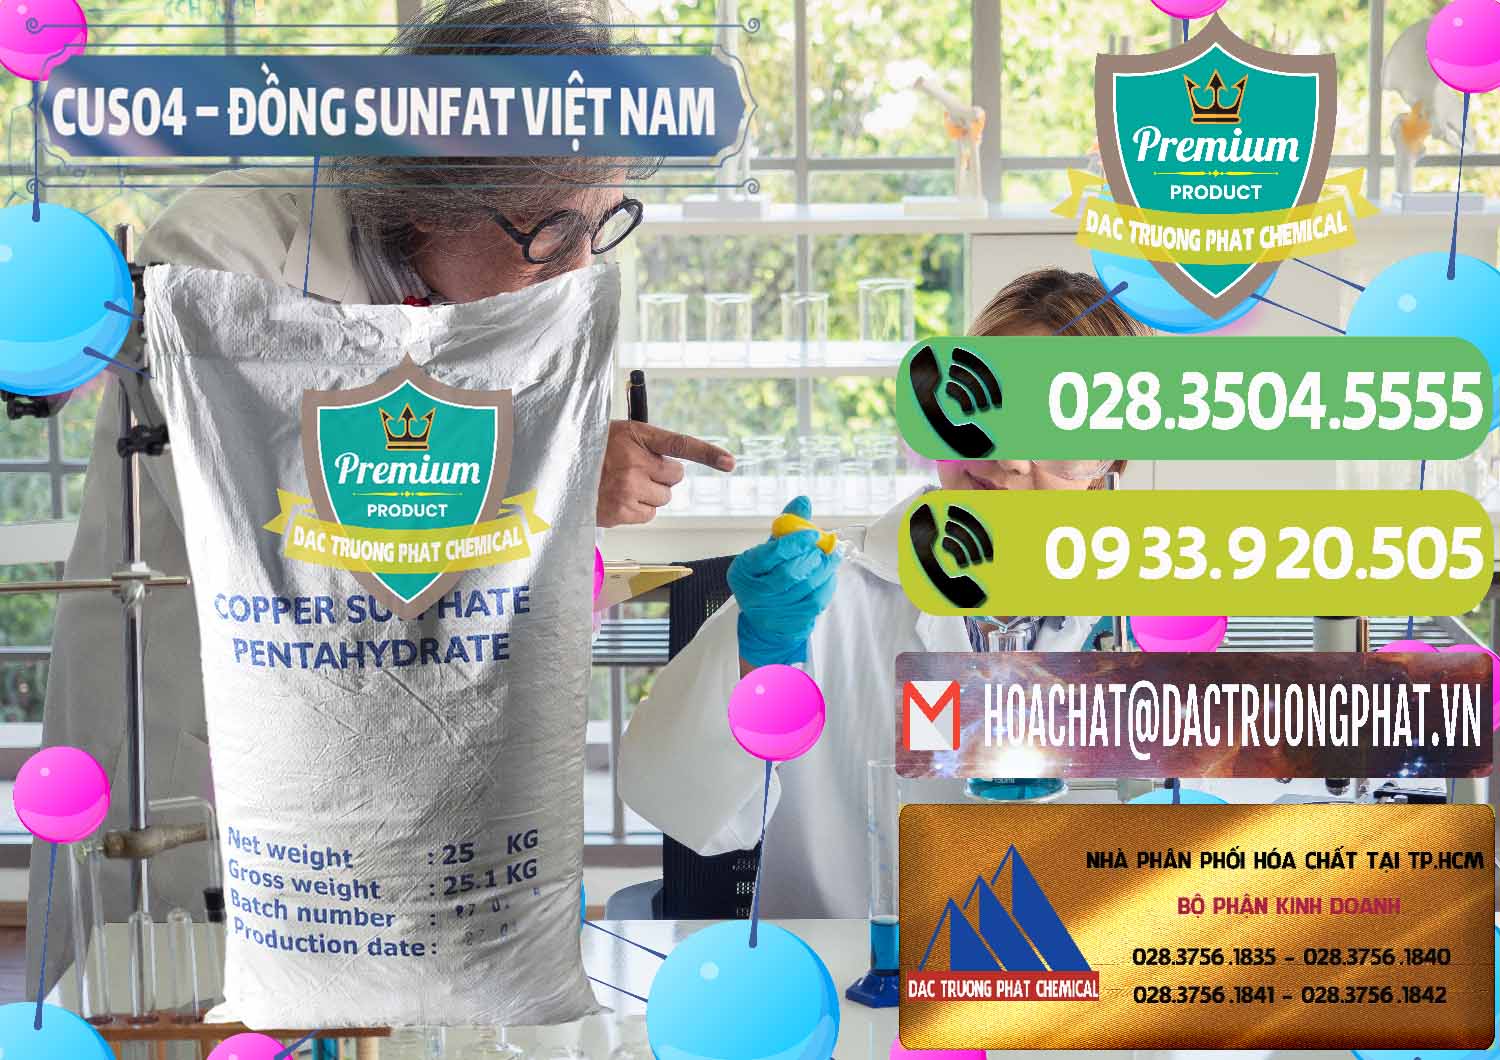 Cty chuyên kinh doanh và phân phối CuSO4 – Đồng Sunfat Dạng Bột Việt Nam - 0196 - Chuyên cung cấp và kinh doanh hóa chất tại TP.HCM - hoachatmientay.vn